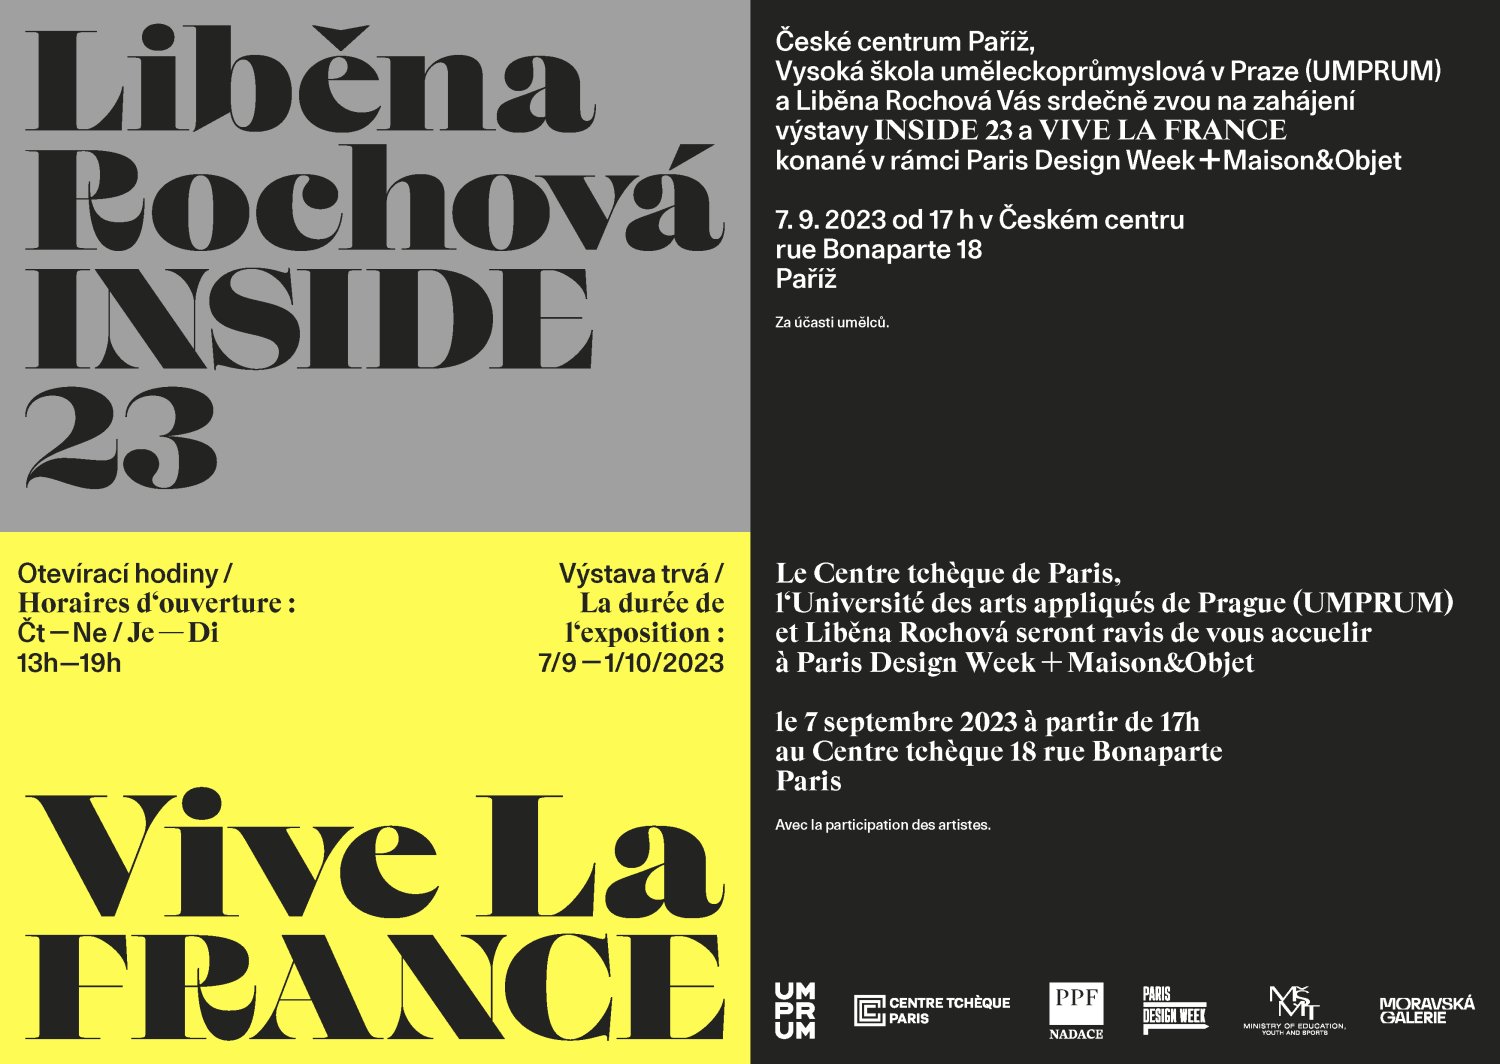 VIVE LA FRANCE a INSIDE 23 - Ateliér designu oděvu a obuvi UMPRUM a Liběna Rochová vystavují v Paříži